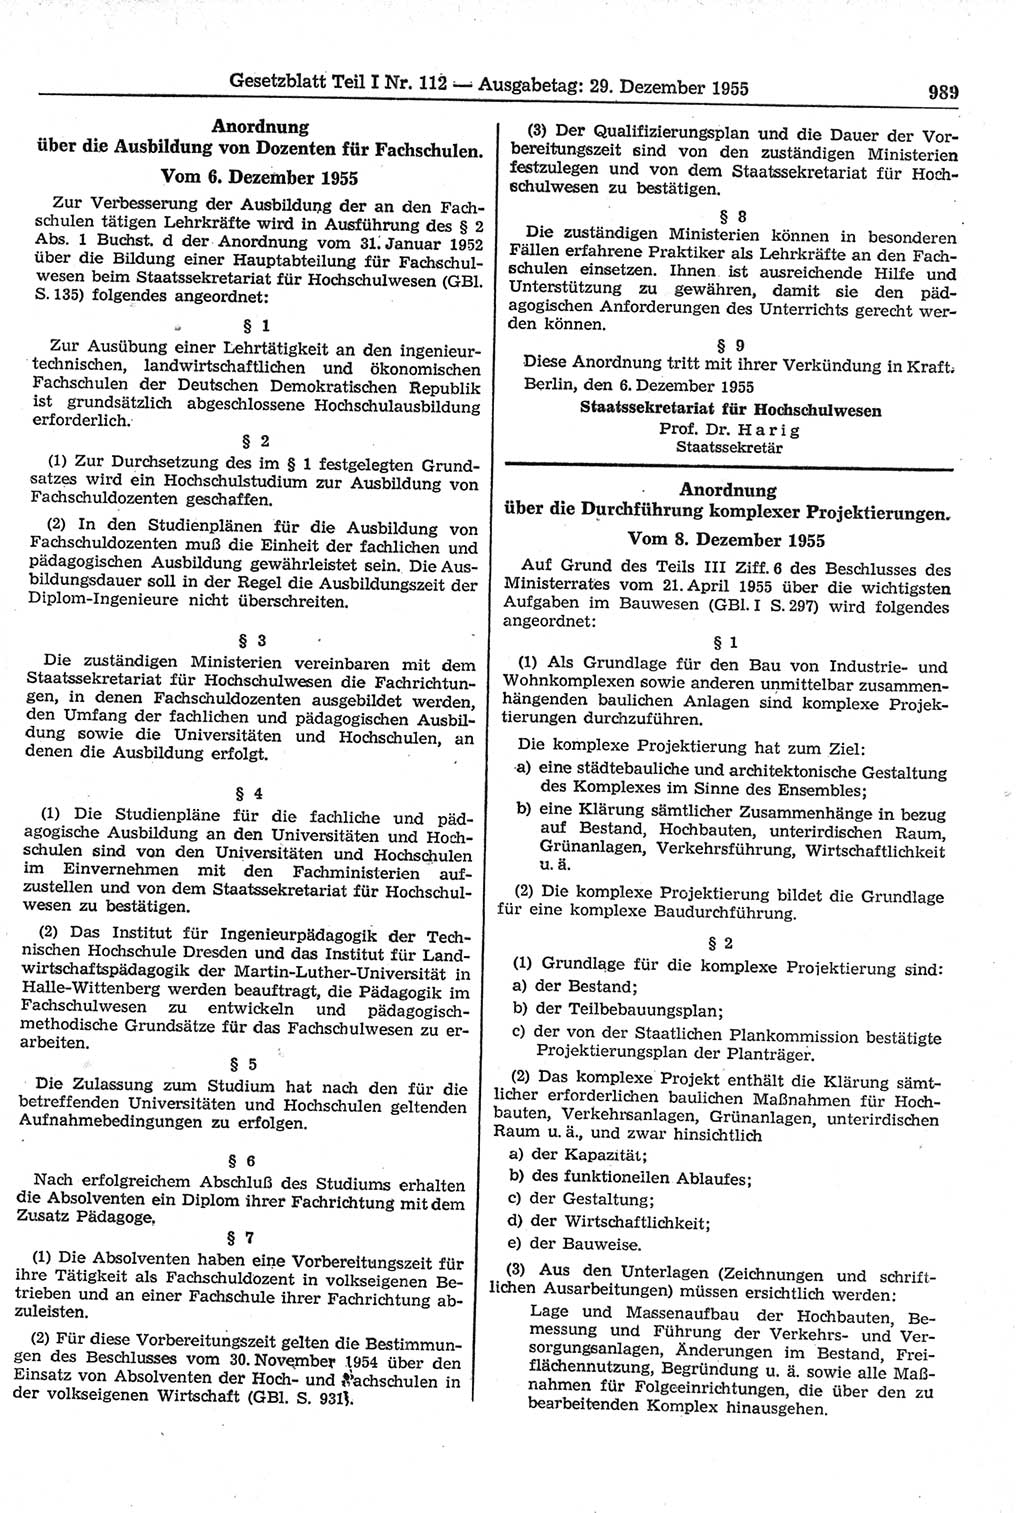 Gesetzblatt (GBl.) der Deutschen Demokratischen Republik (DDR) Teil Ⅰ 1955, Seite 989 (GBl. DDR Ⅰ 1955, S. 989)